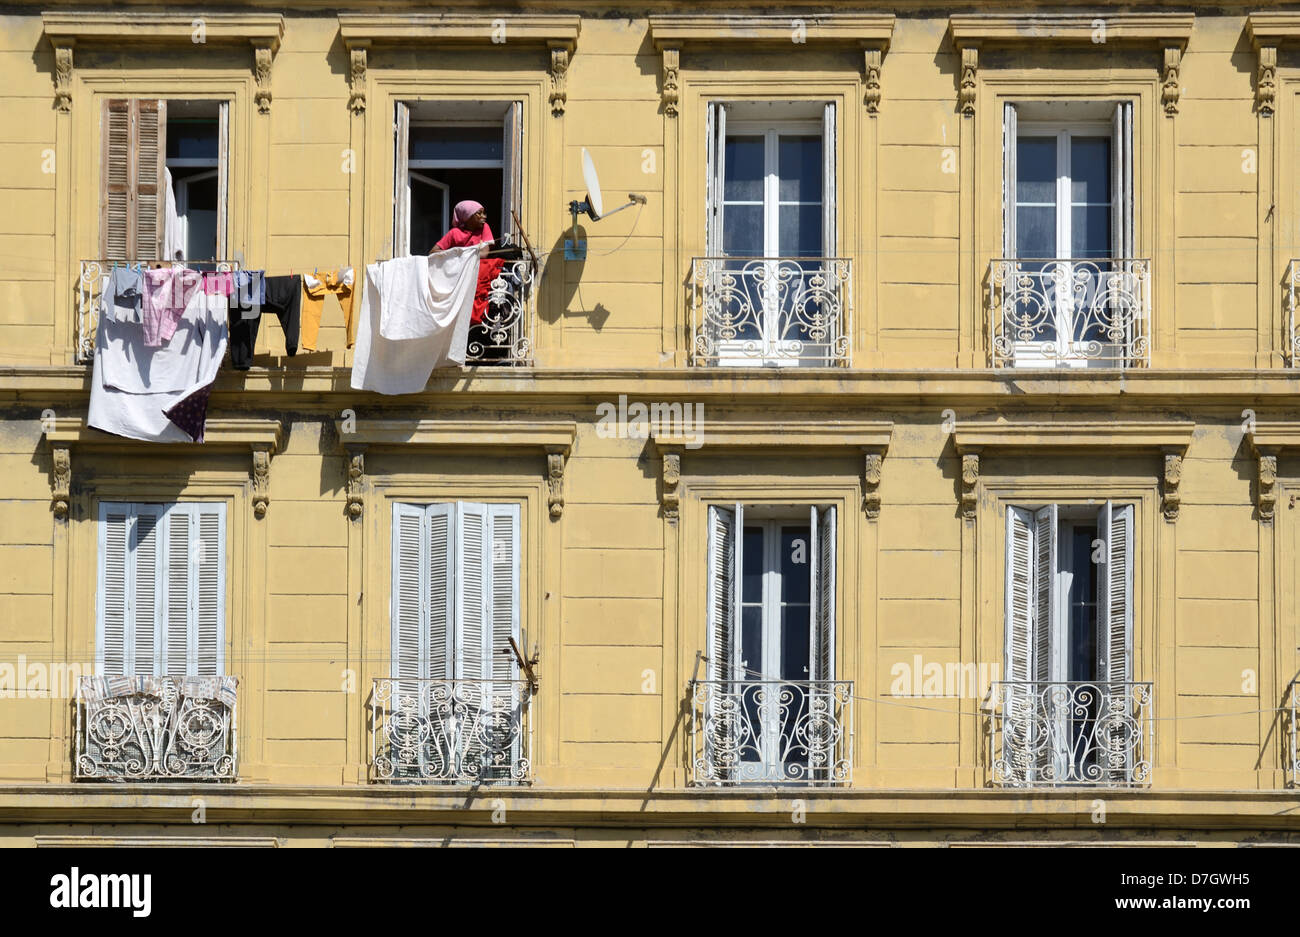 Donna Immigrata Hanging Out Lavaggio, Vestiti O Lavanderia A Secco Fuori Casa Tradizionale Edificio Marseille O Marsiglia Provenza Francia Foto Stock